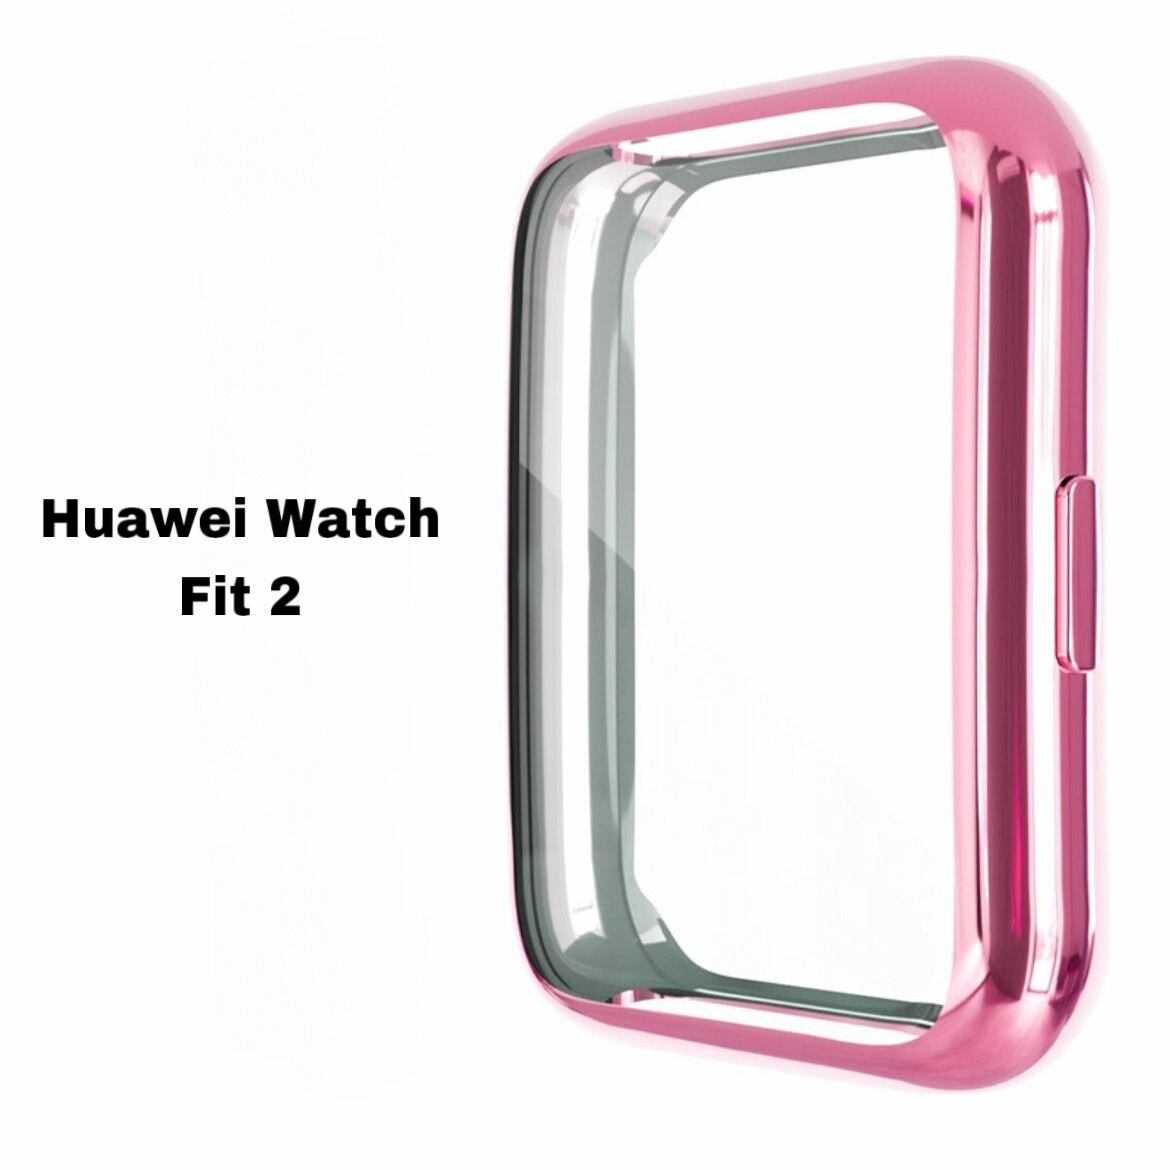 Силиконовый защитный чехол-бампер S&T Galvan для умных смарт-часов Huawei Watch Fit 2 защищает экран, противоударный розовый